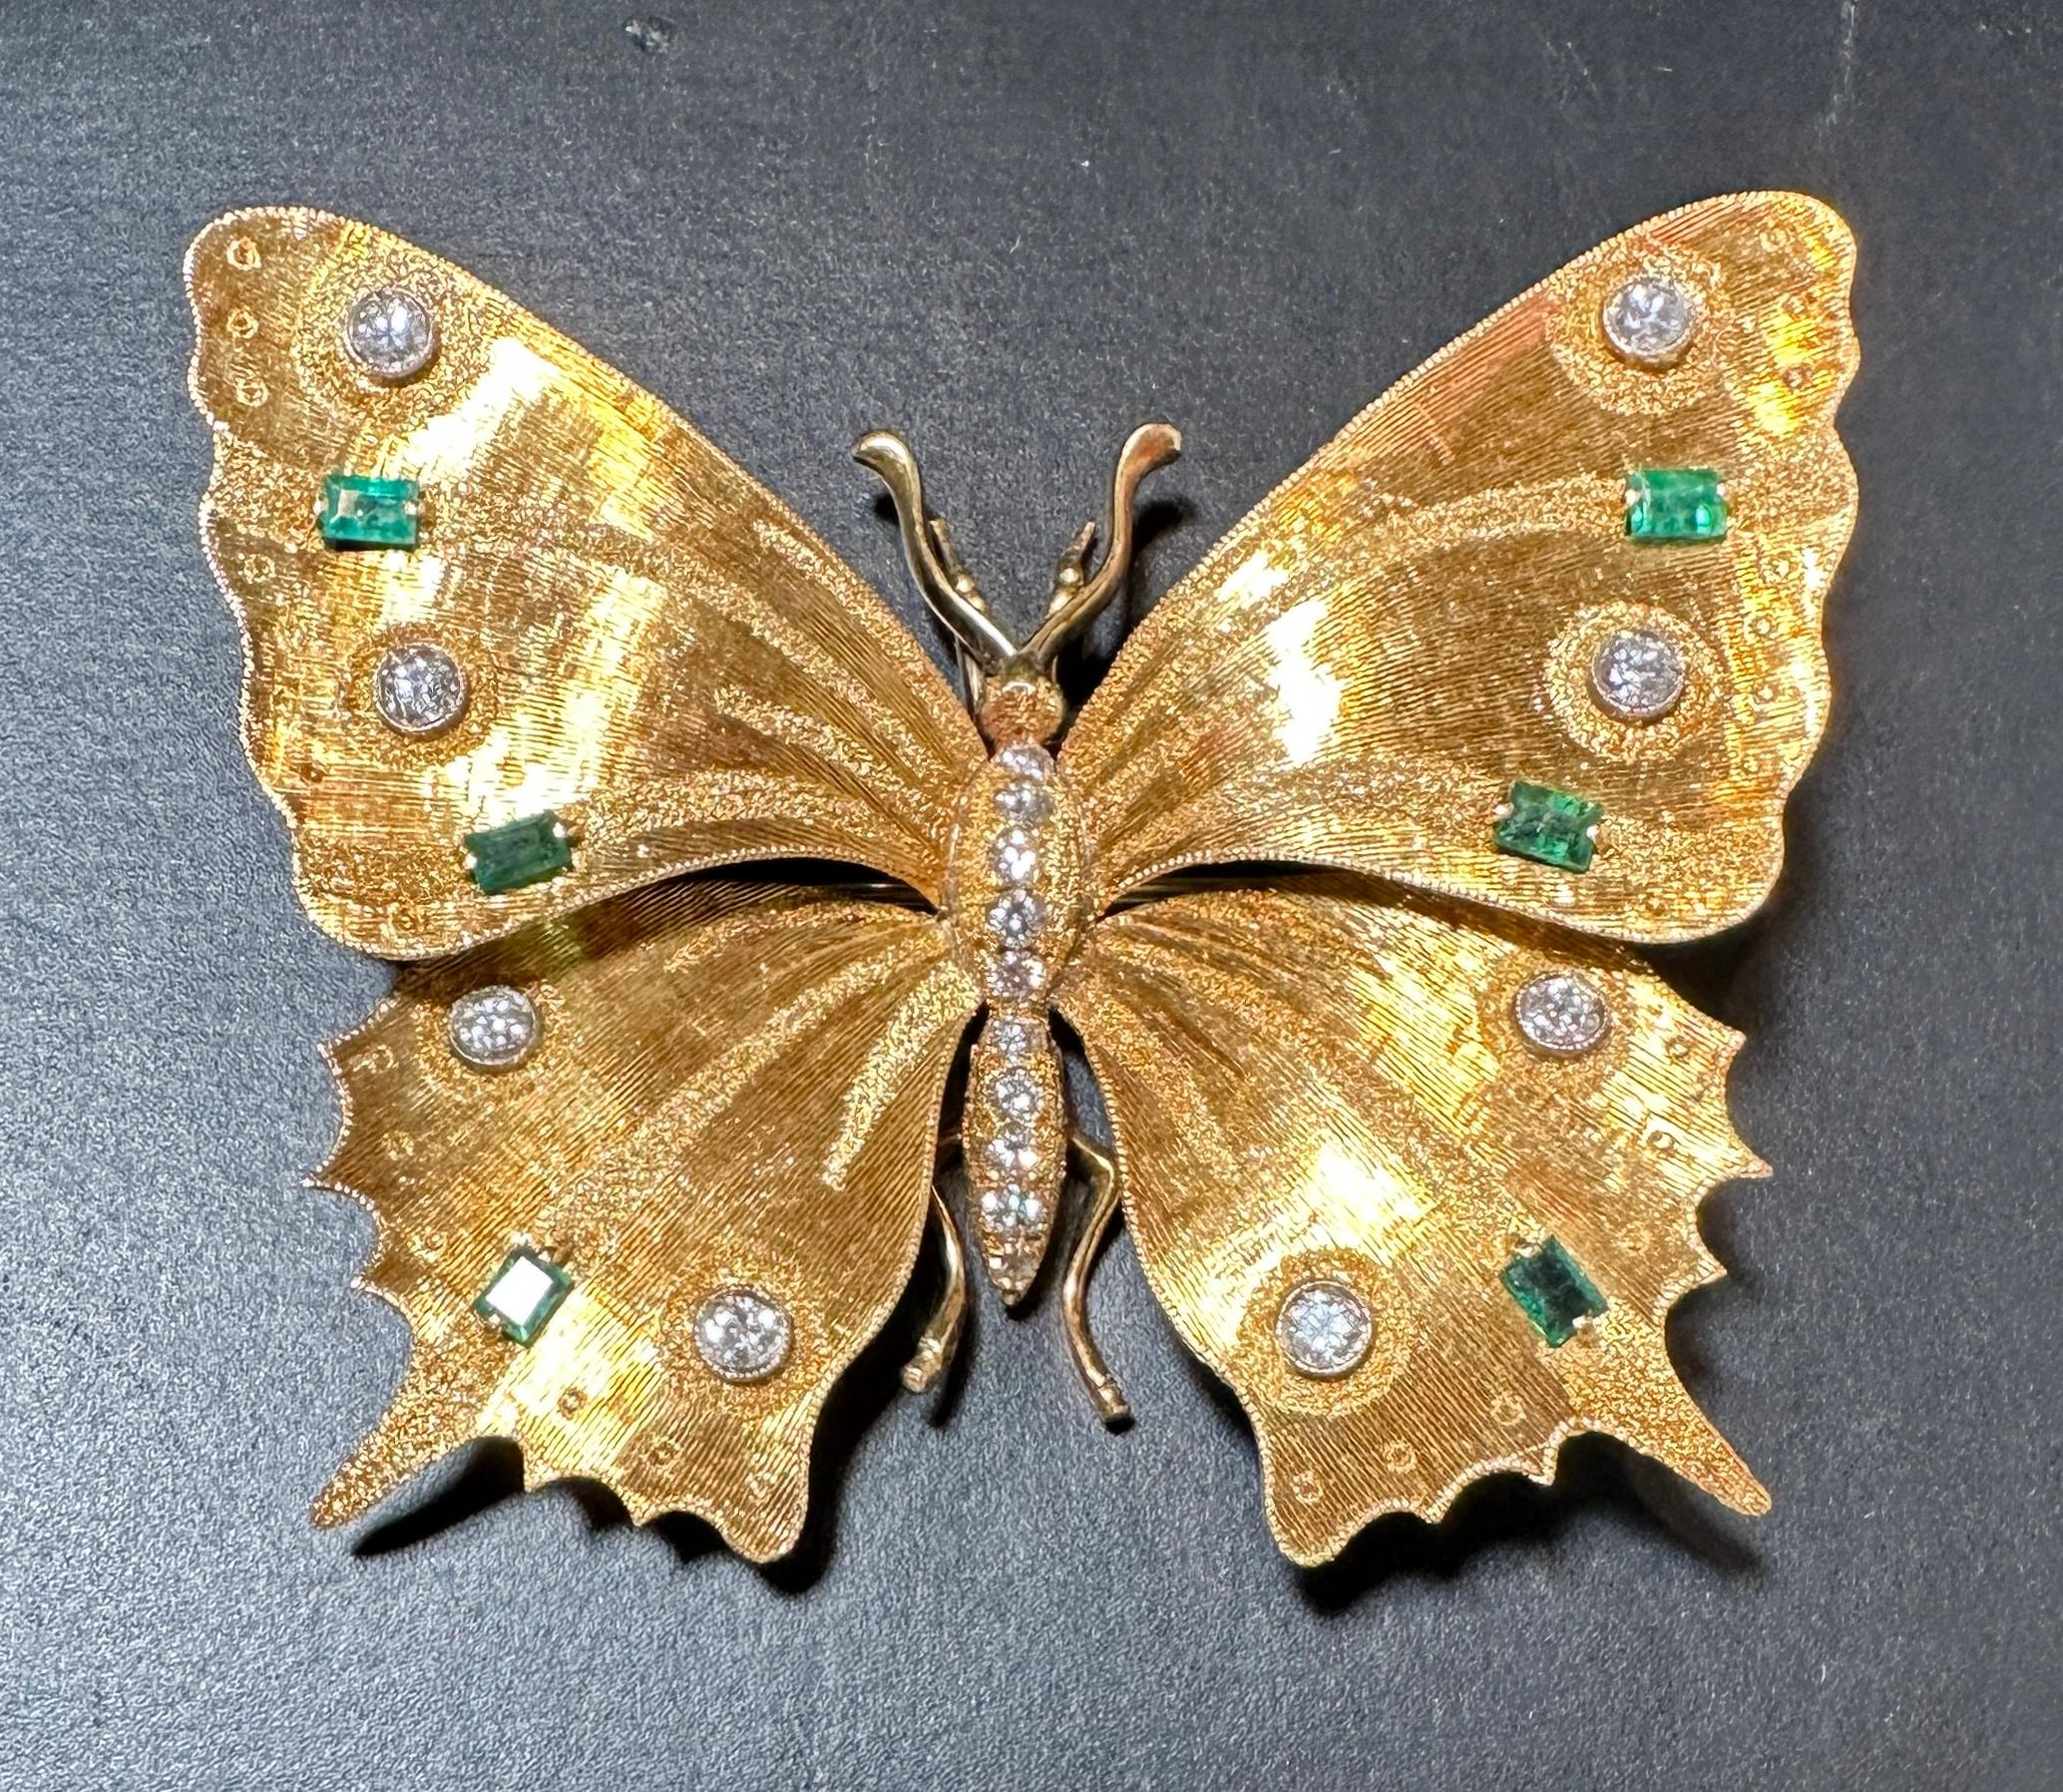 Brosche aus Gold, 18 Karat mit Diamanten und Smaragden in Form eines Schmetterlings. 18 runde Diamanten  ungefähr .60 Karat G Farbe SI1 Klarheit. 6 Baguette-Smaragde. 
20.2g 
60mm x 51mm. 
Markiert 750.